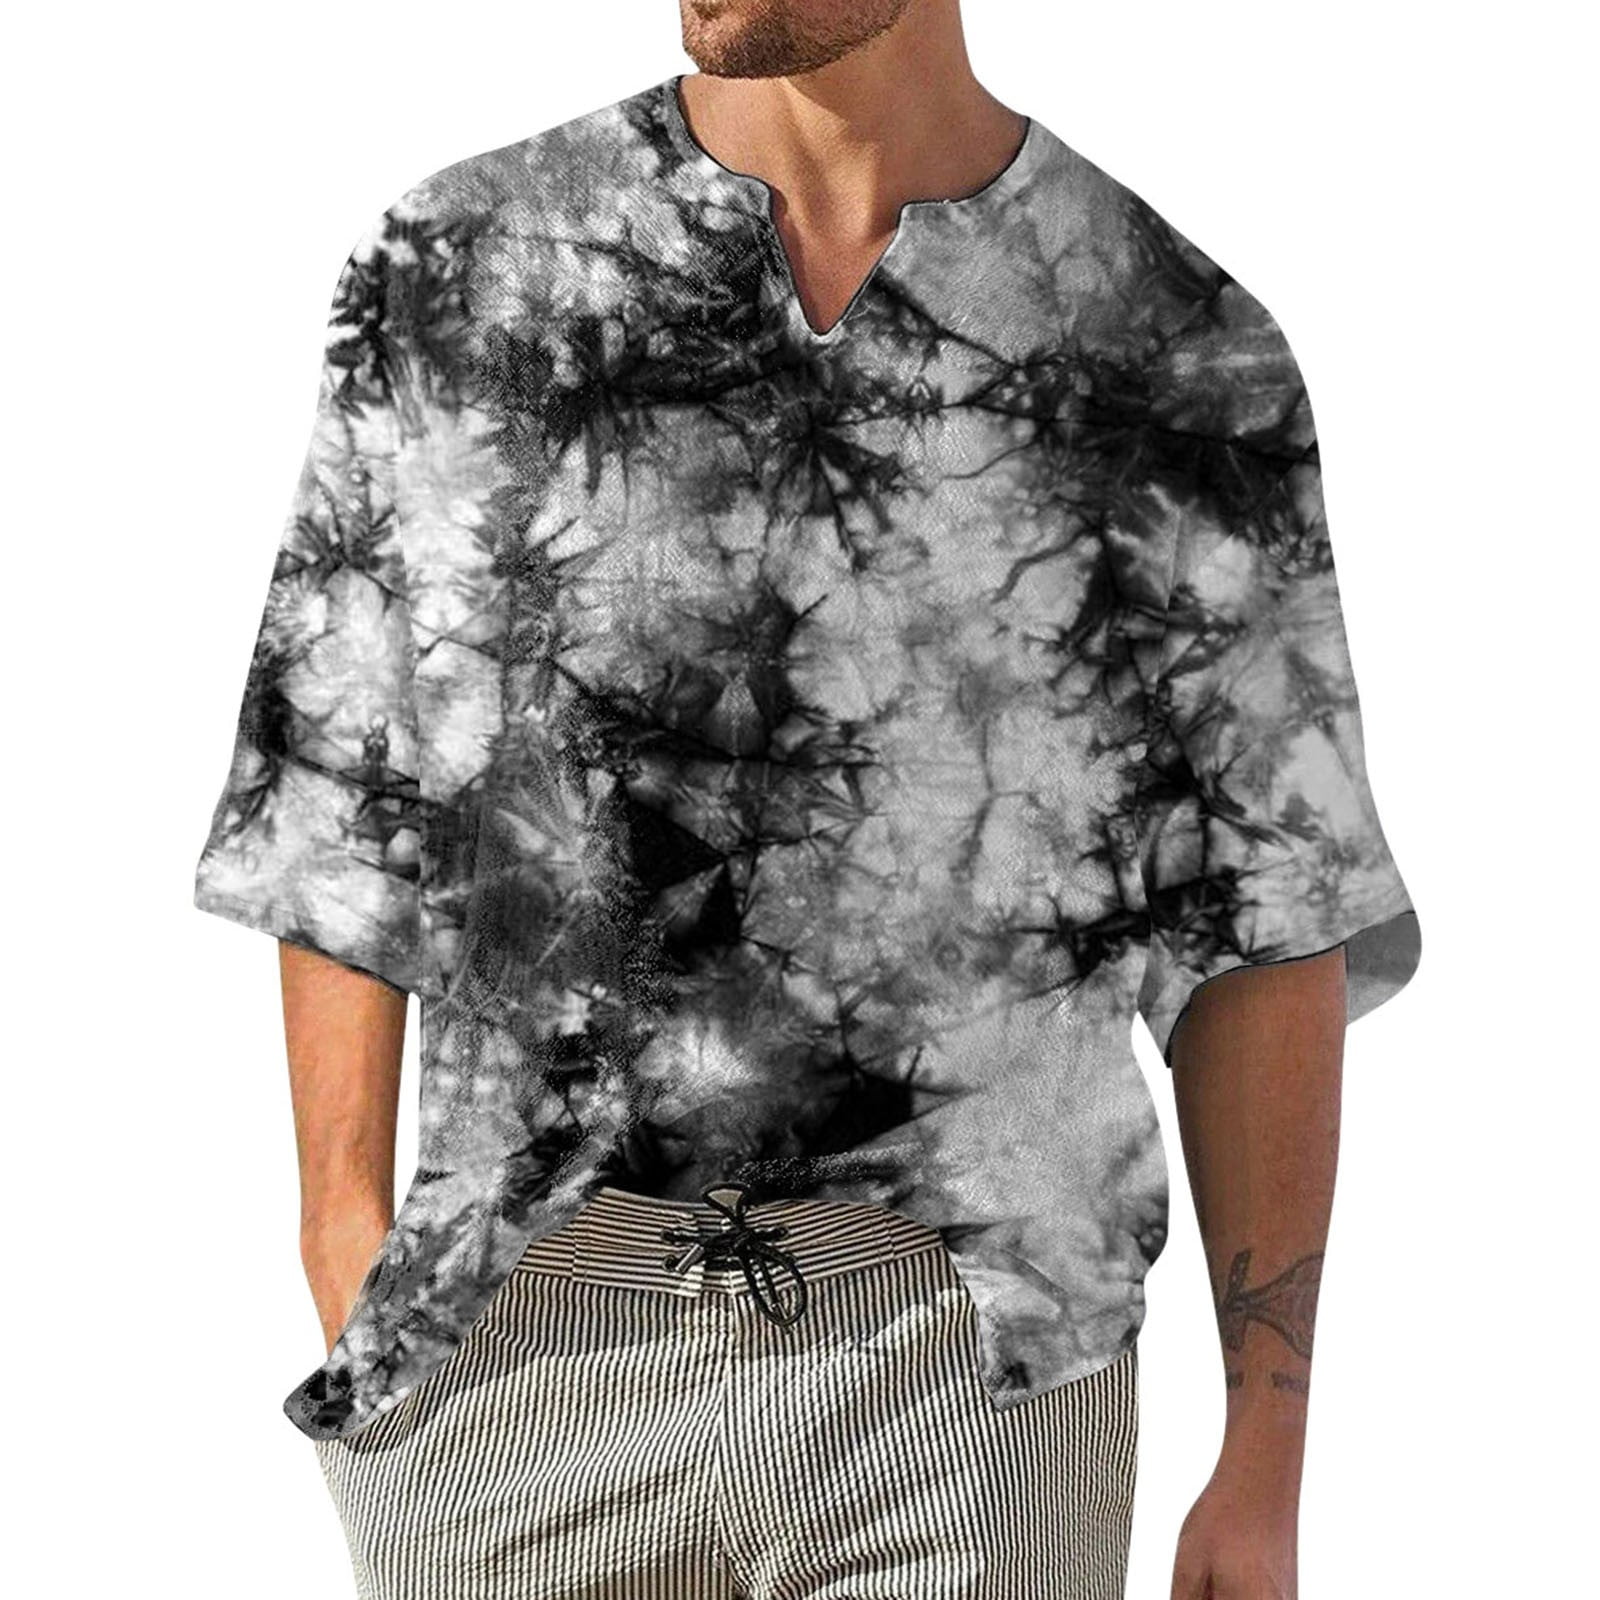 AdBFJAF Tshirts Shirts for Men V Neck Black Mens Summer Fashion Casual ...